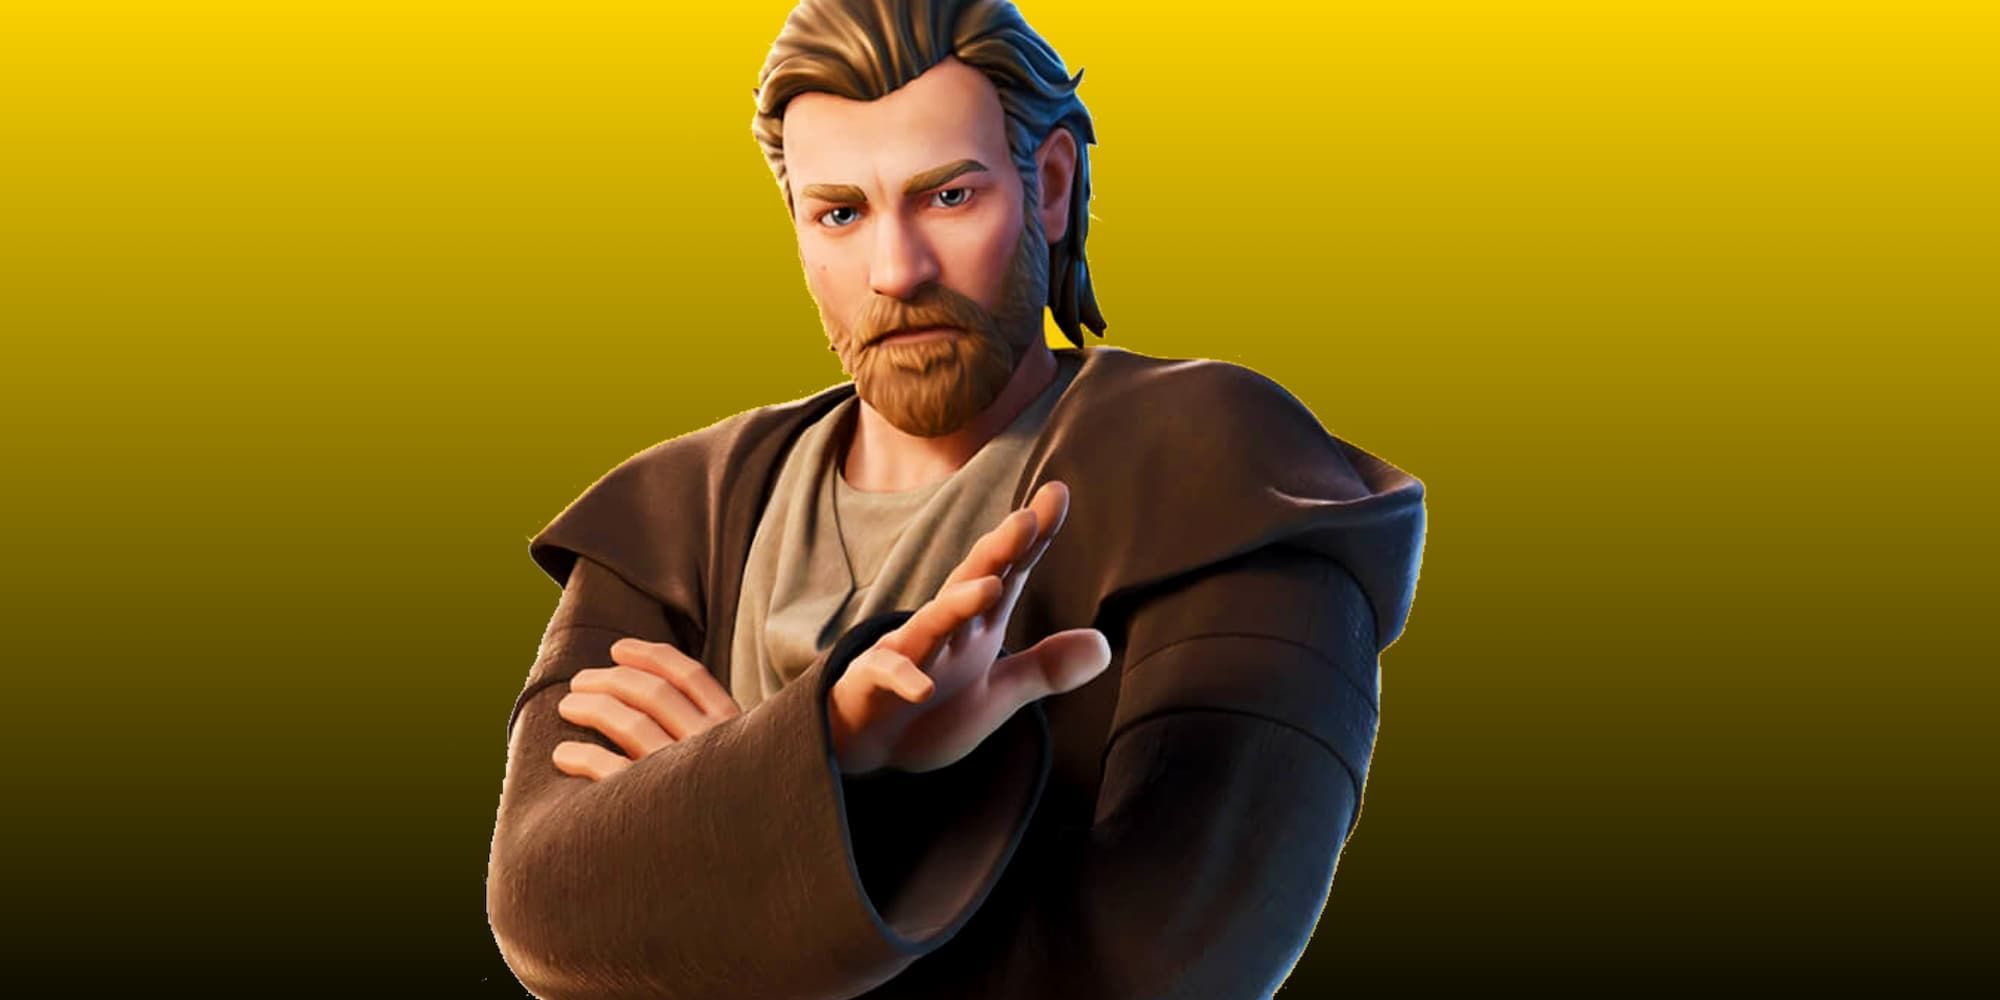 Obi-Wan Kenobi's Fortnite skin waves it hand to use the Force.